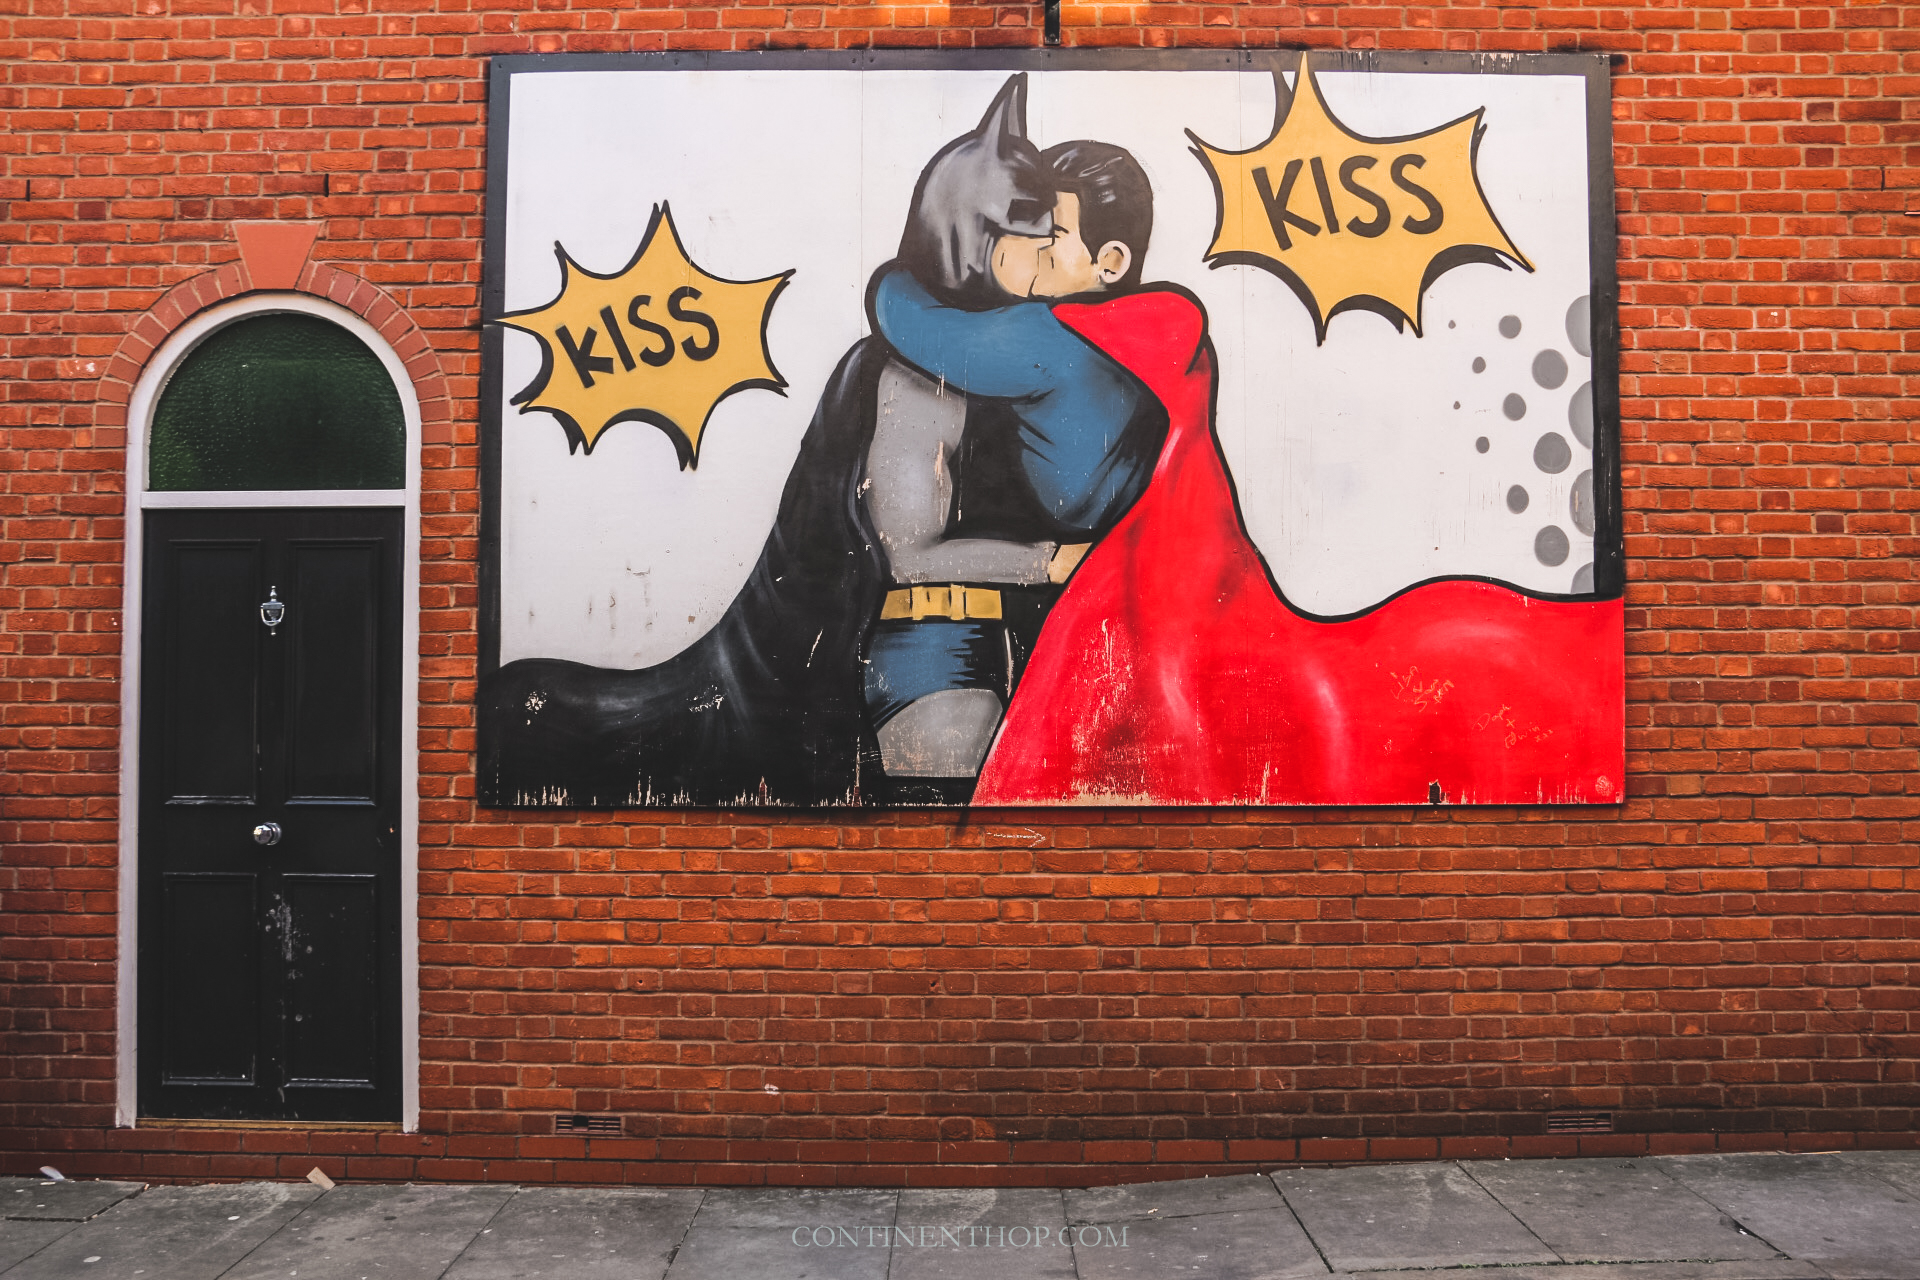 batman superman kiss street art manchester attractions travel guide